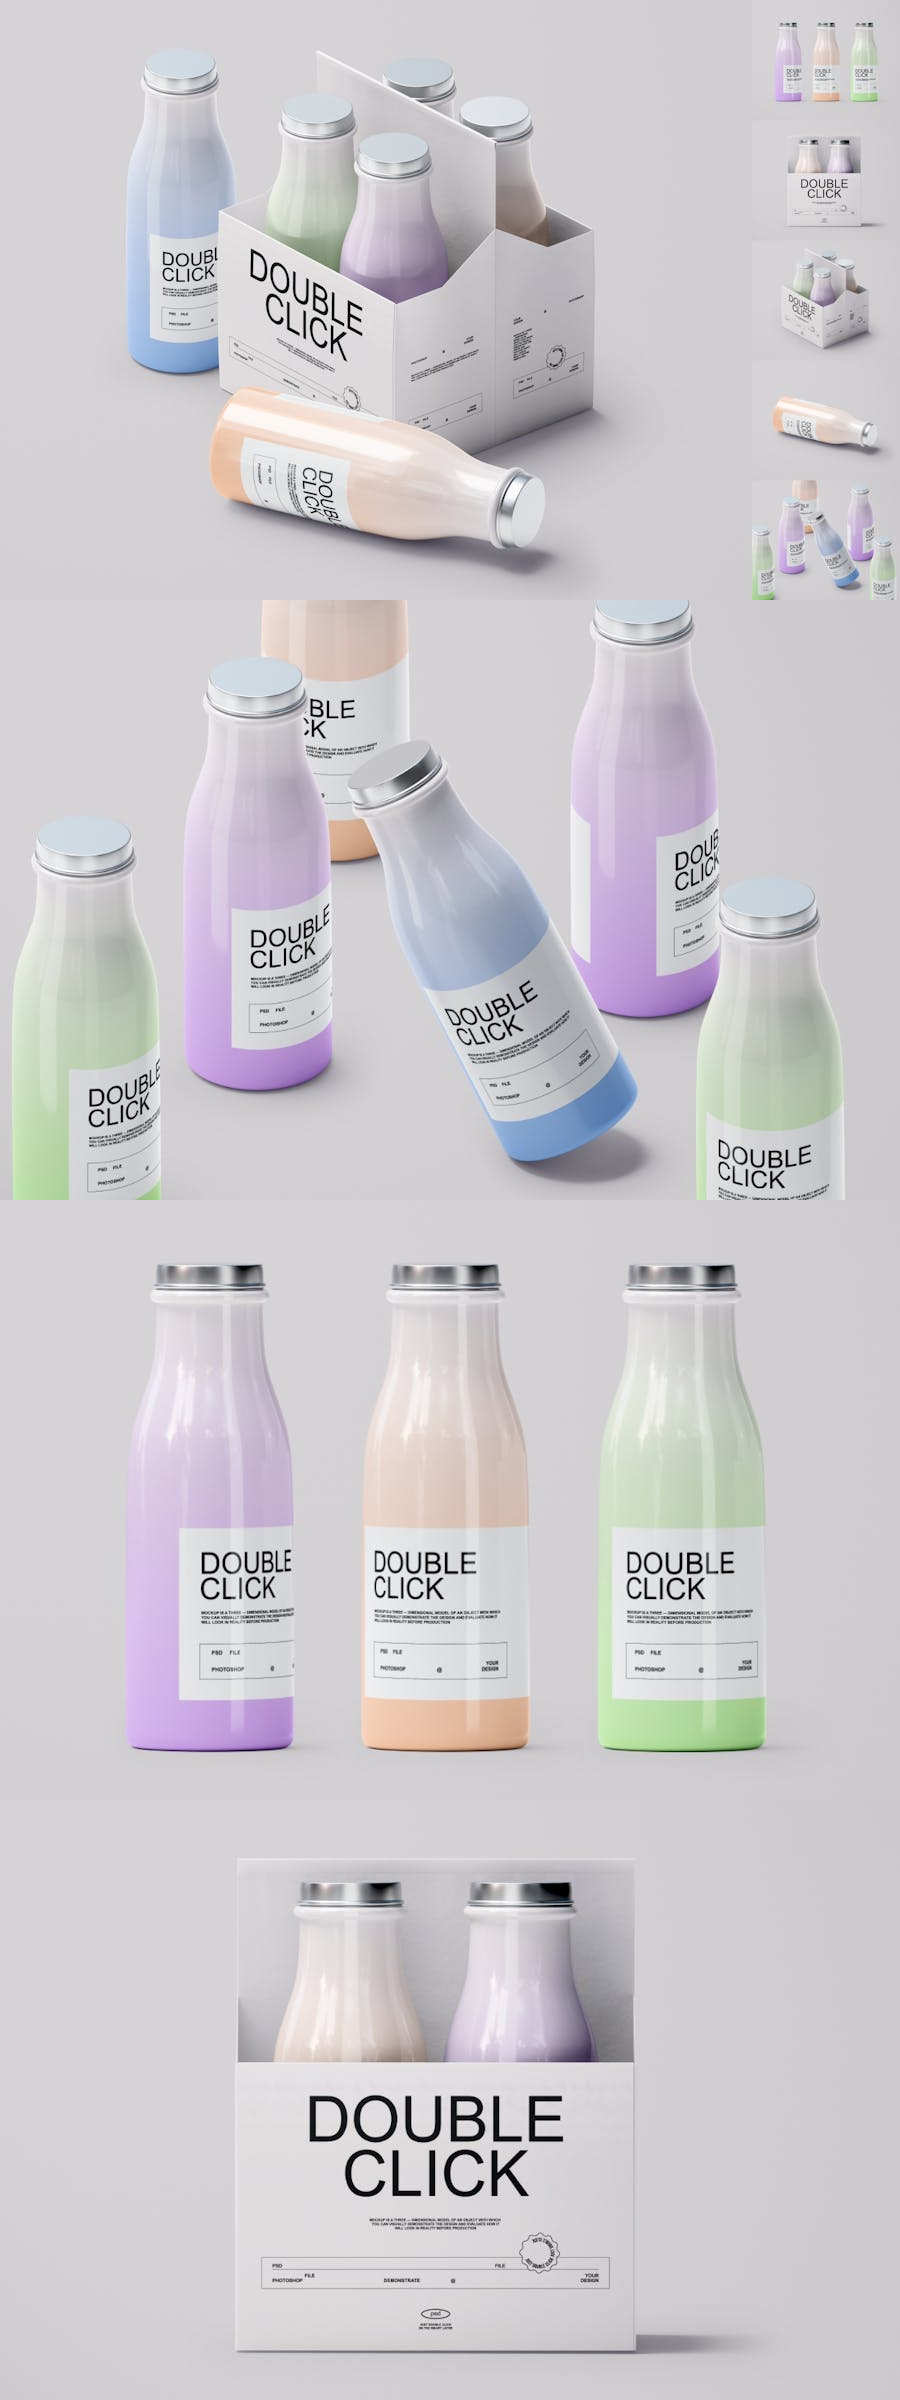 bottle yogurt bottle design bottles bottle label design Packaging Label drink Mockup product